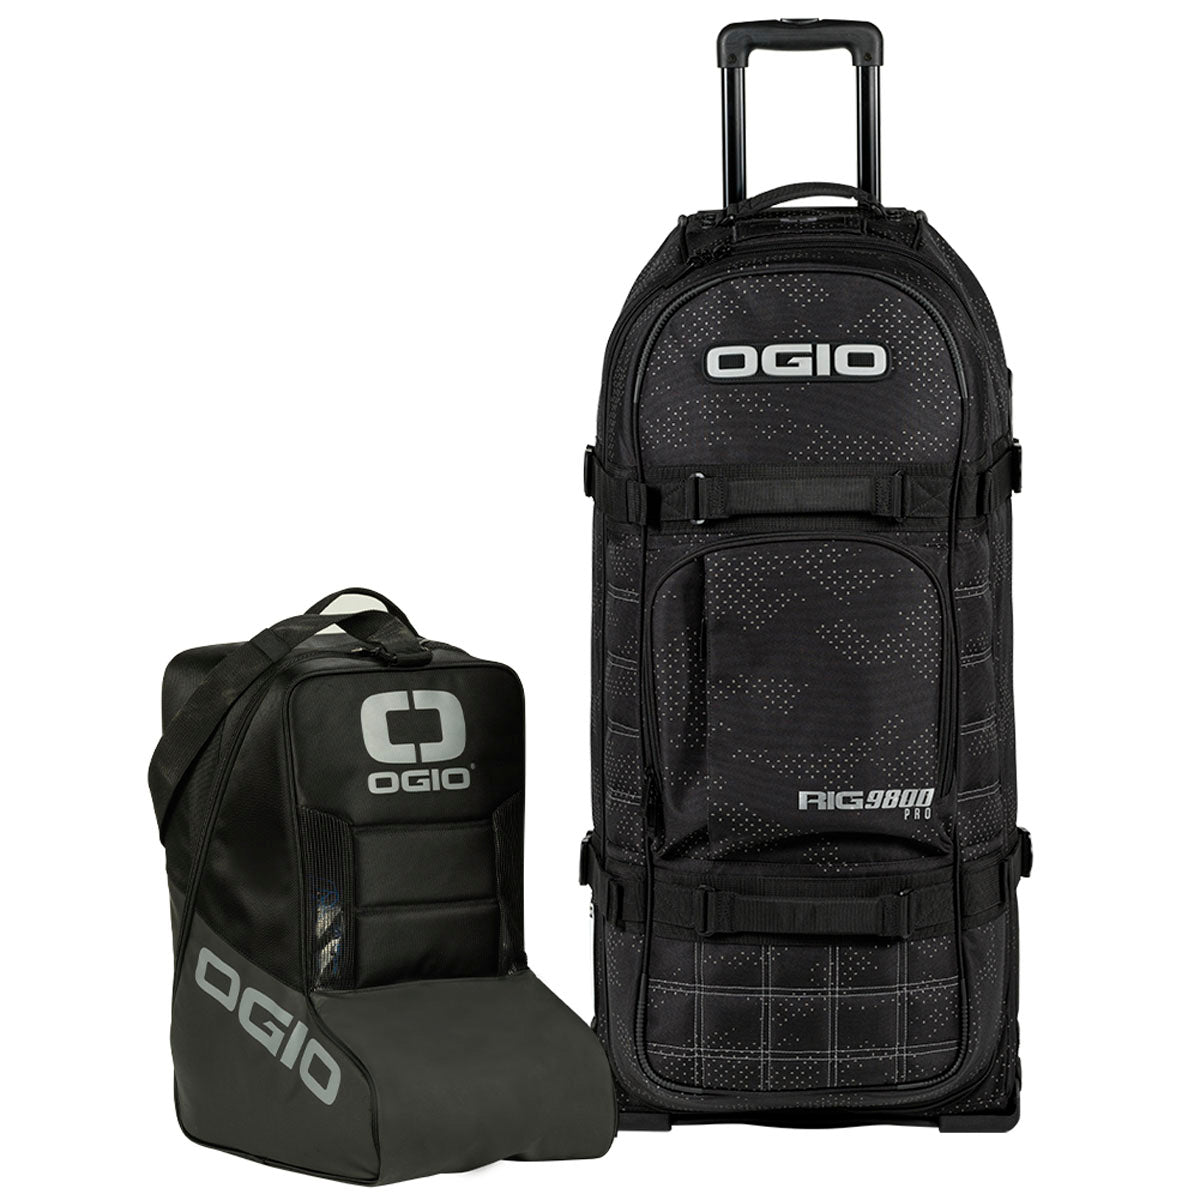 Ogio Rig 9800 Pro Gear Bag - Night Camo - ExtremeSupply.com